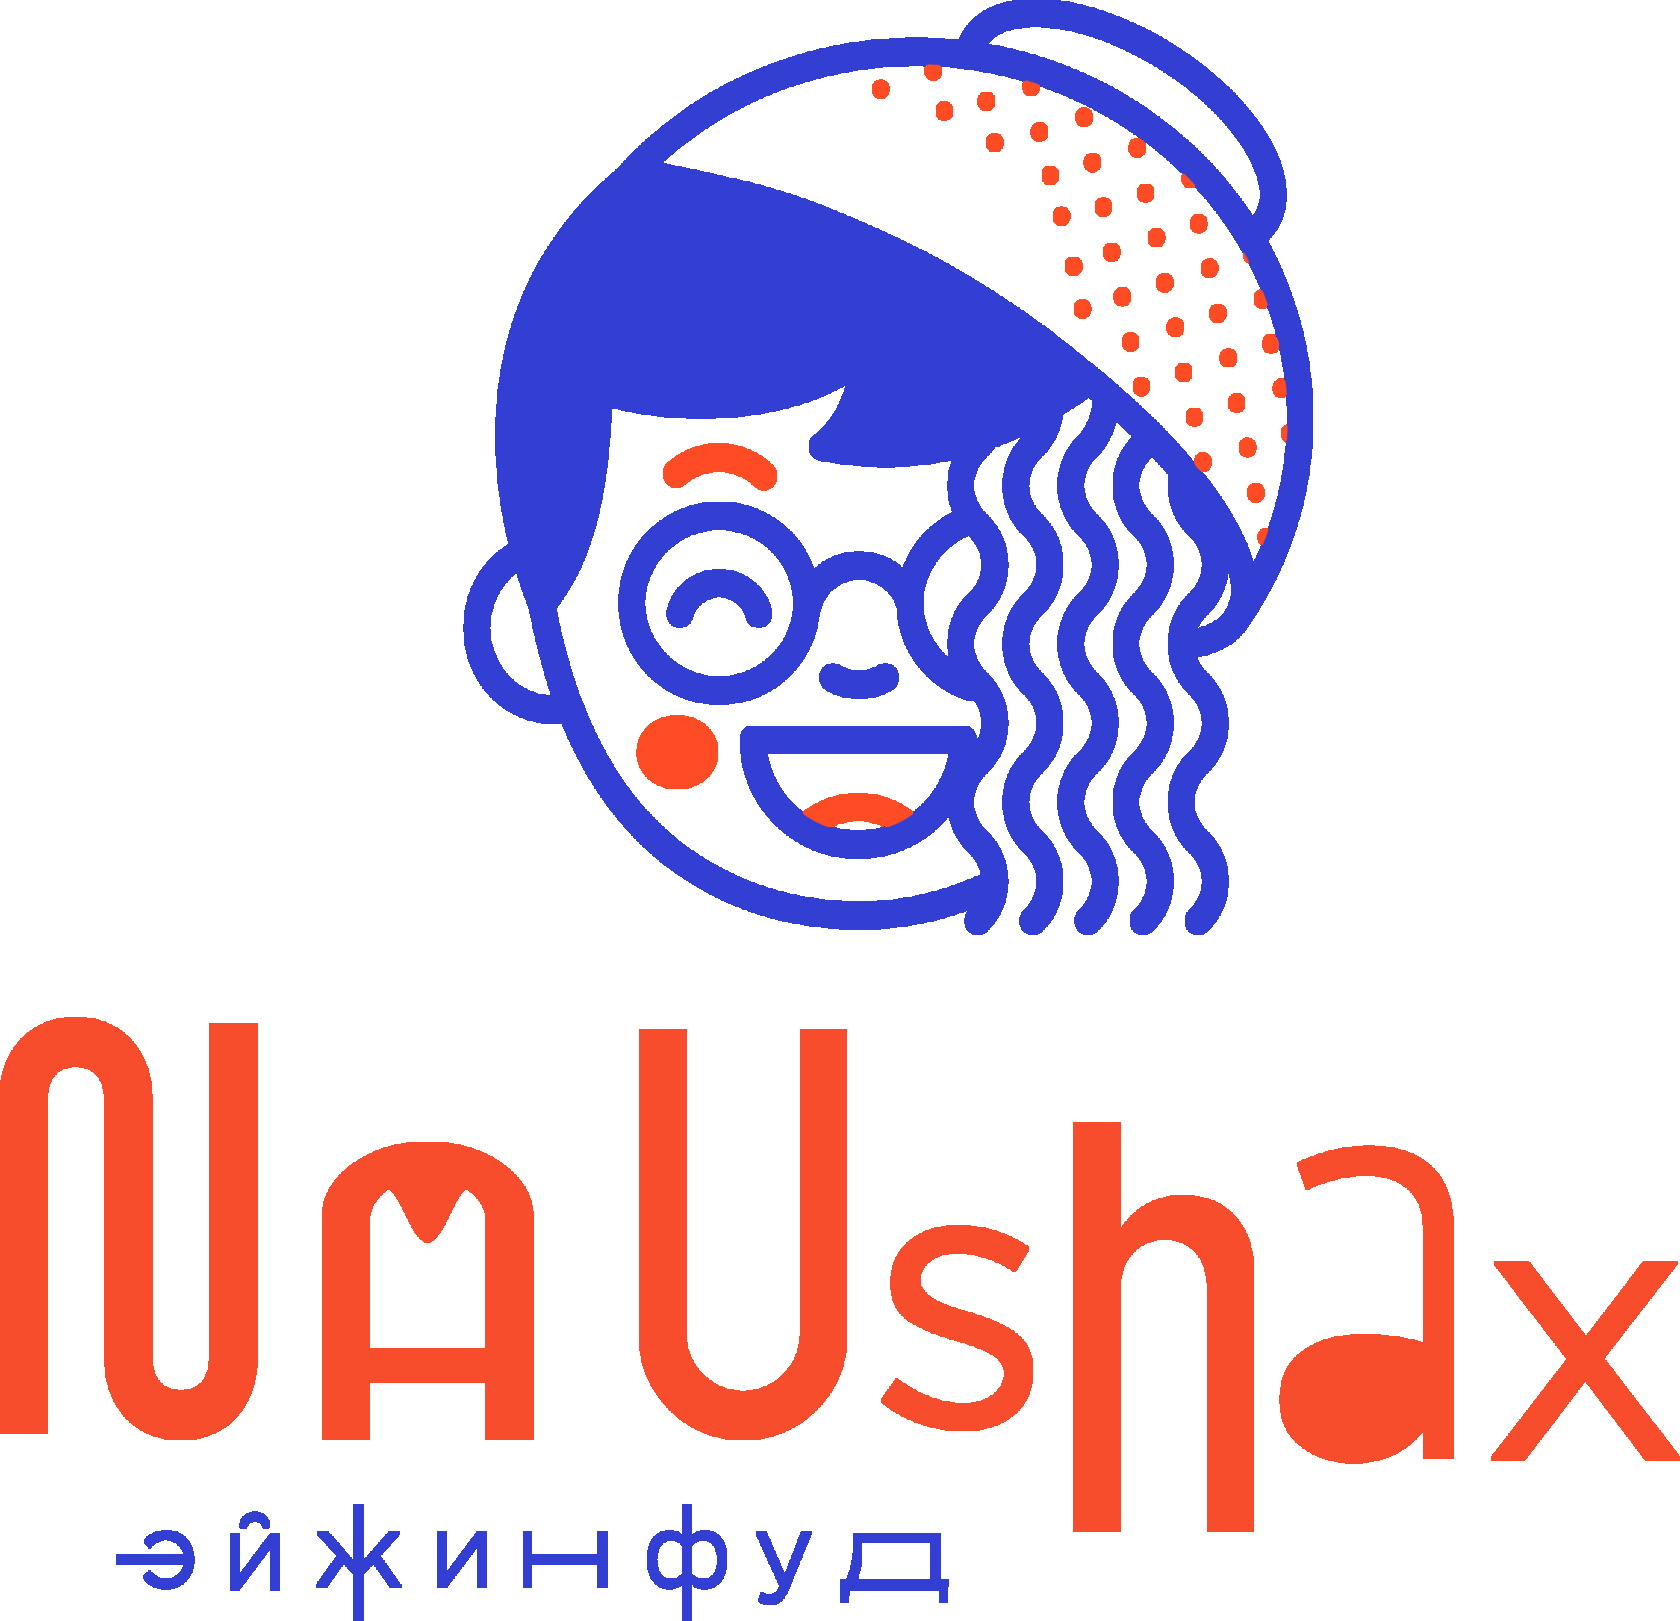 NaUshax